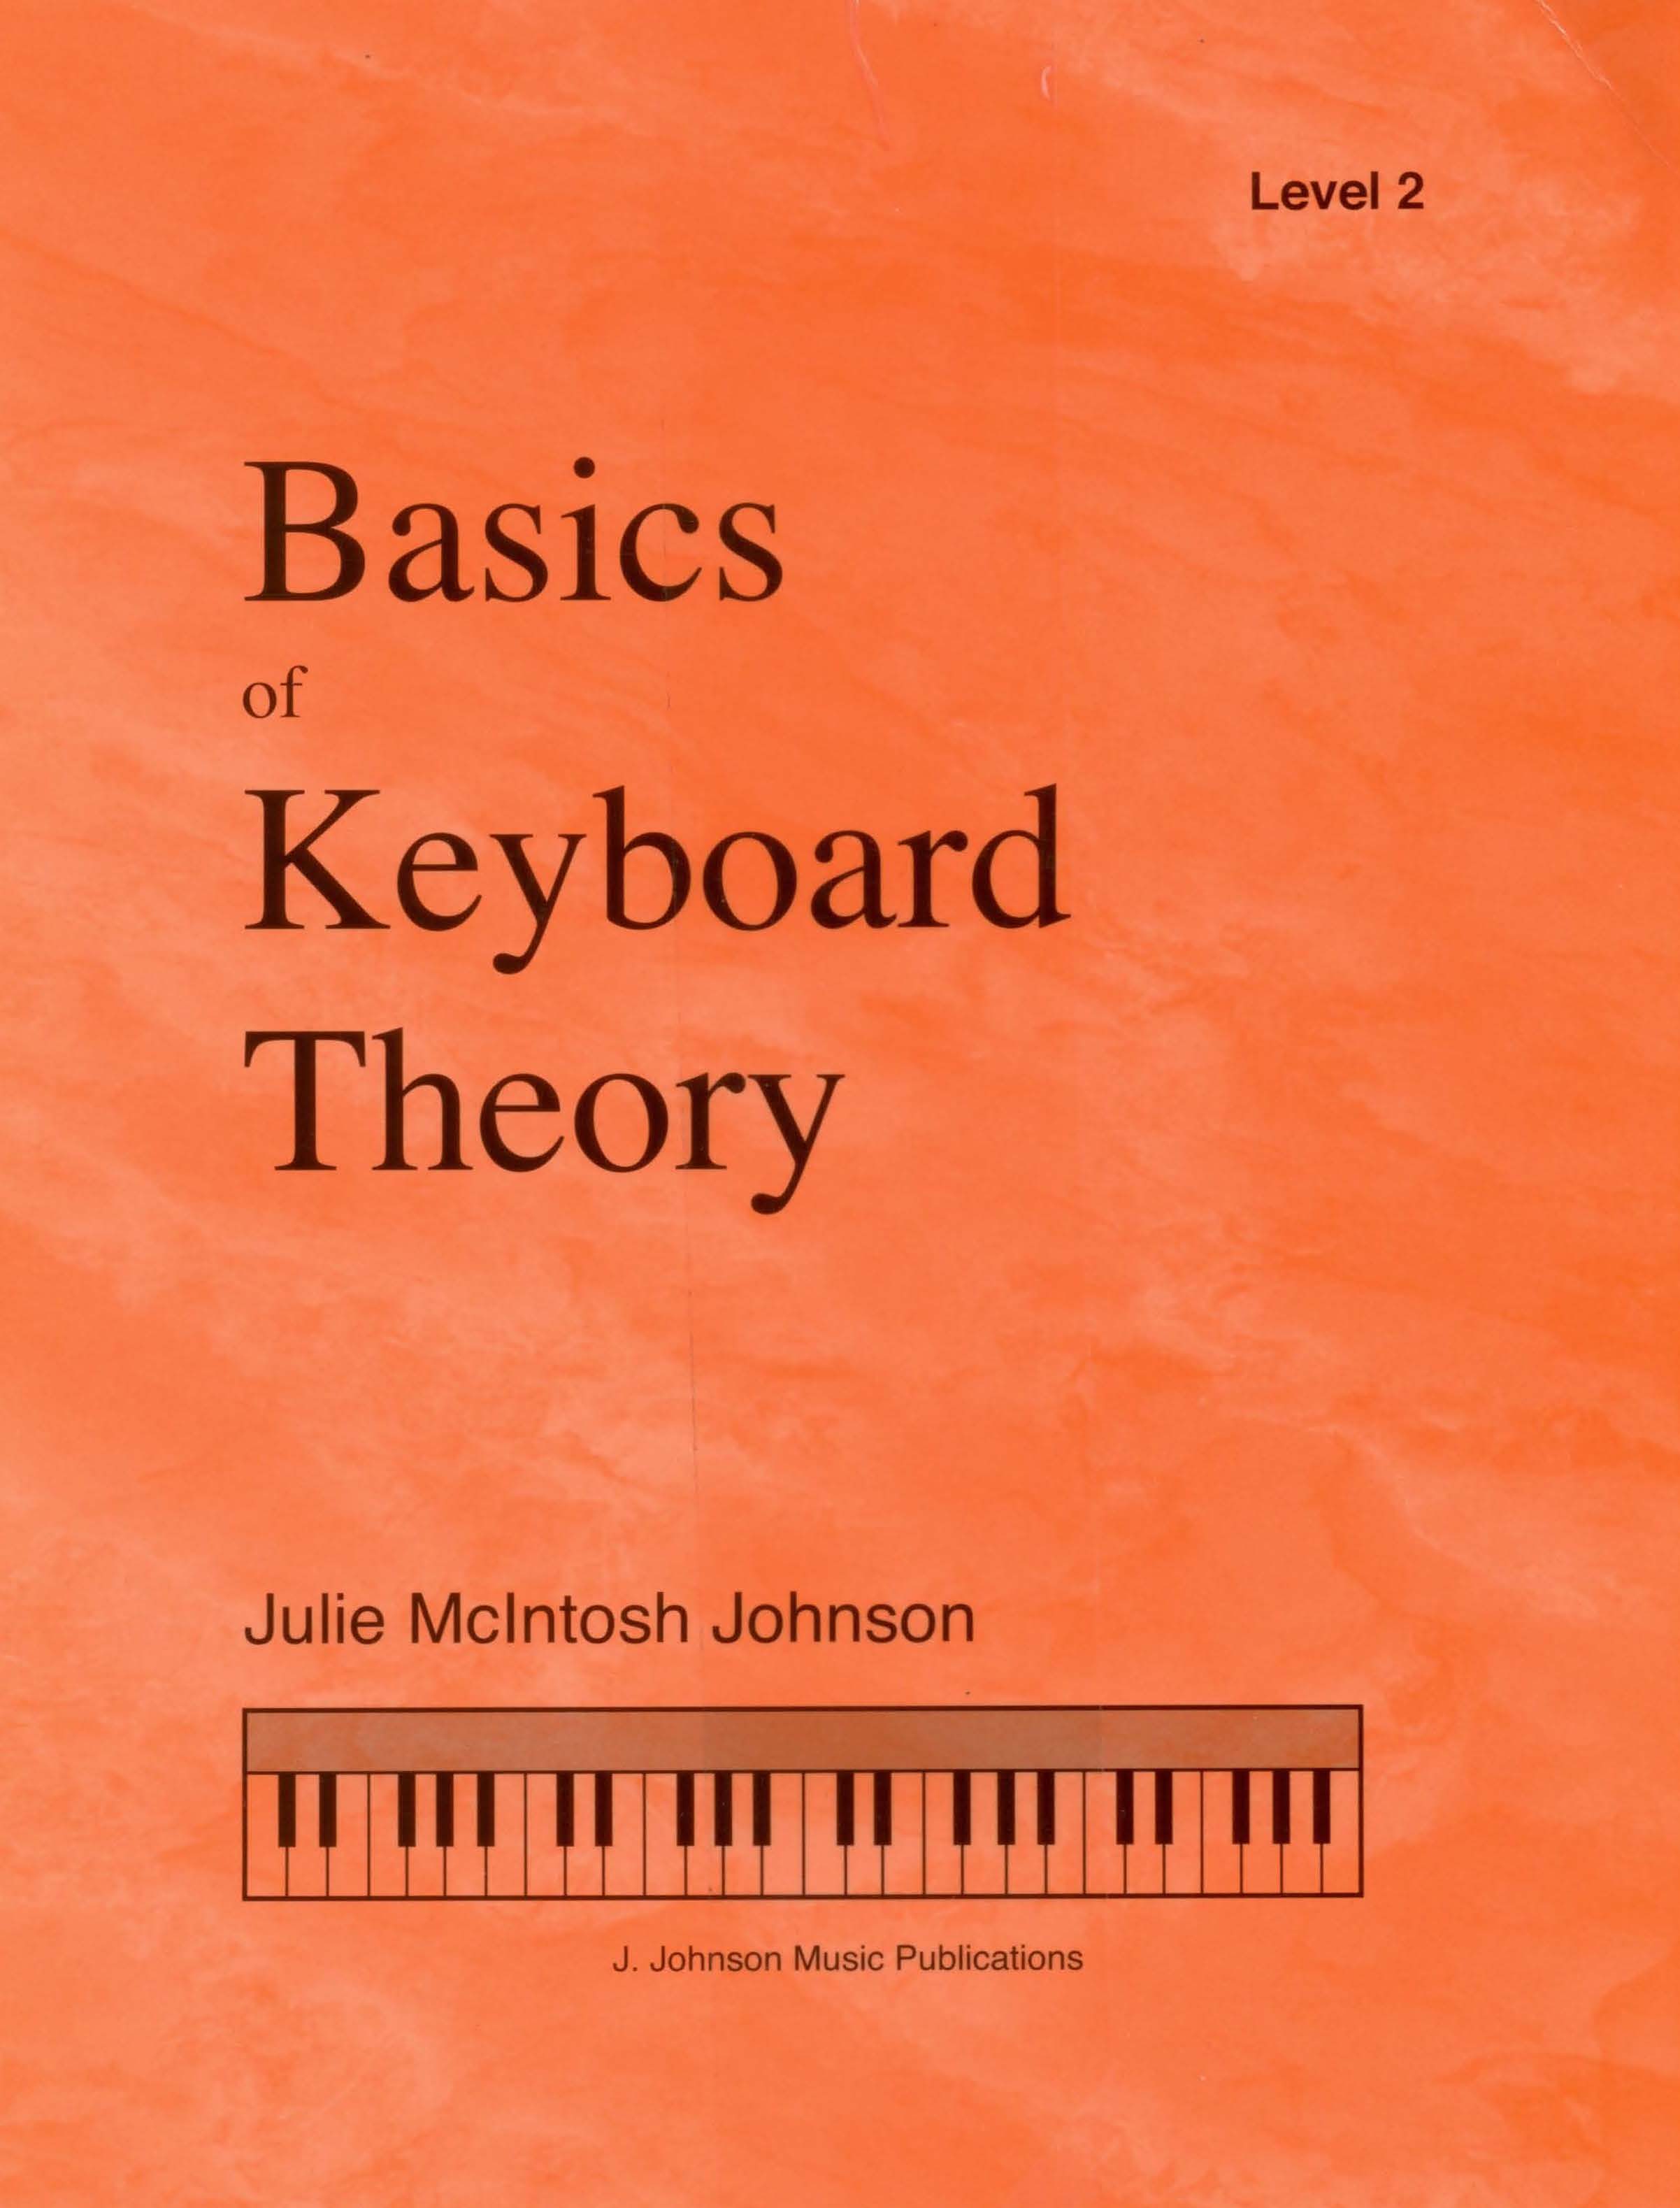 Basics of Keyboard Theory Level 2